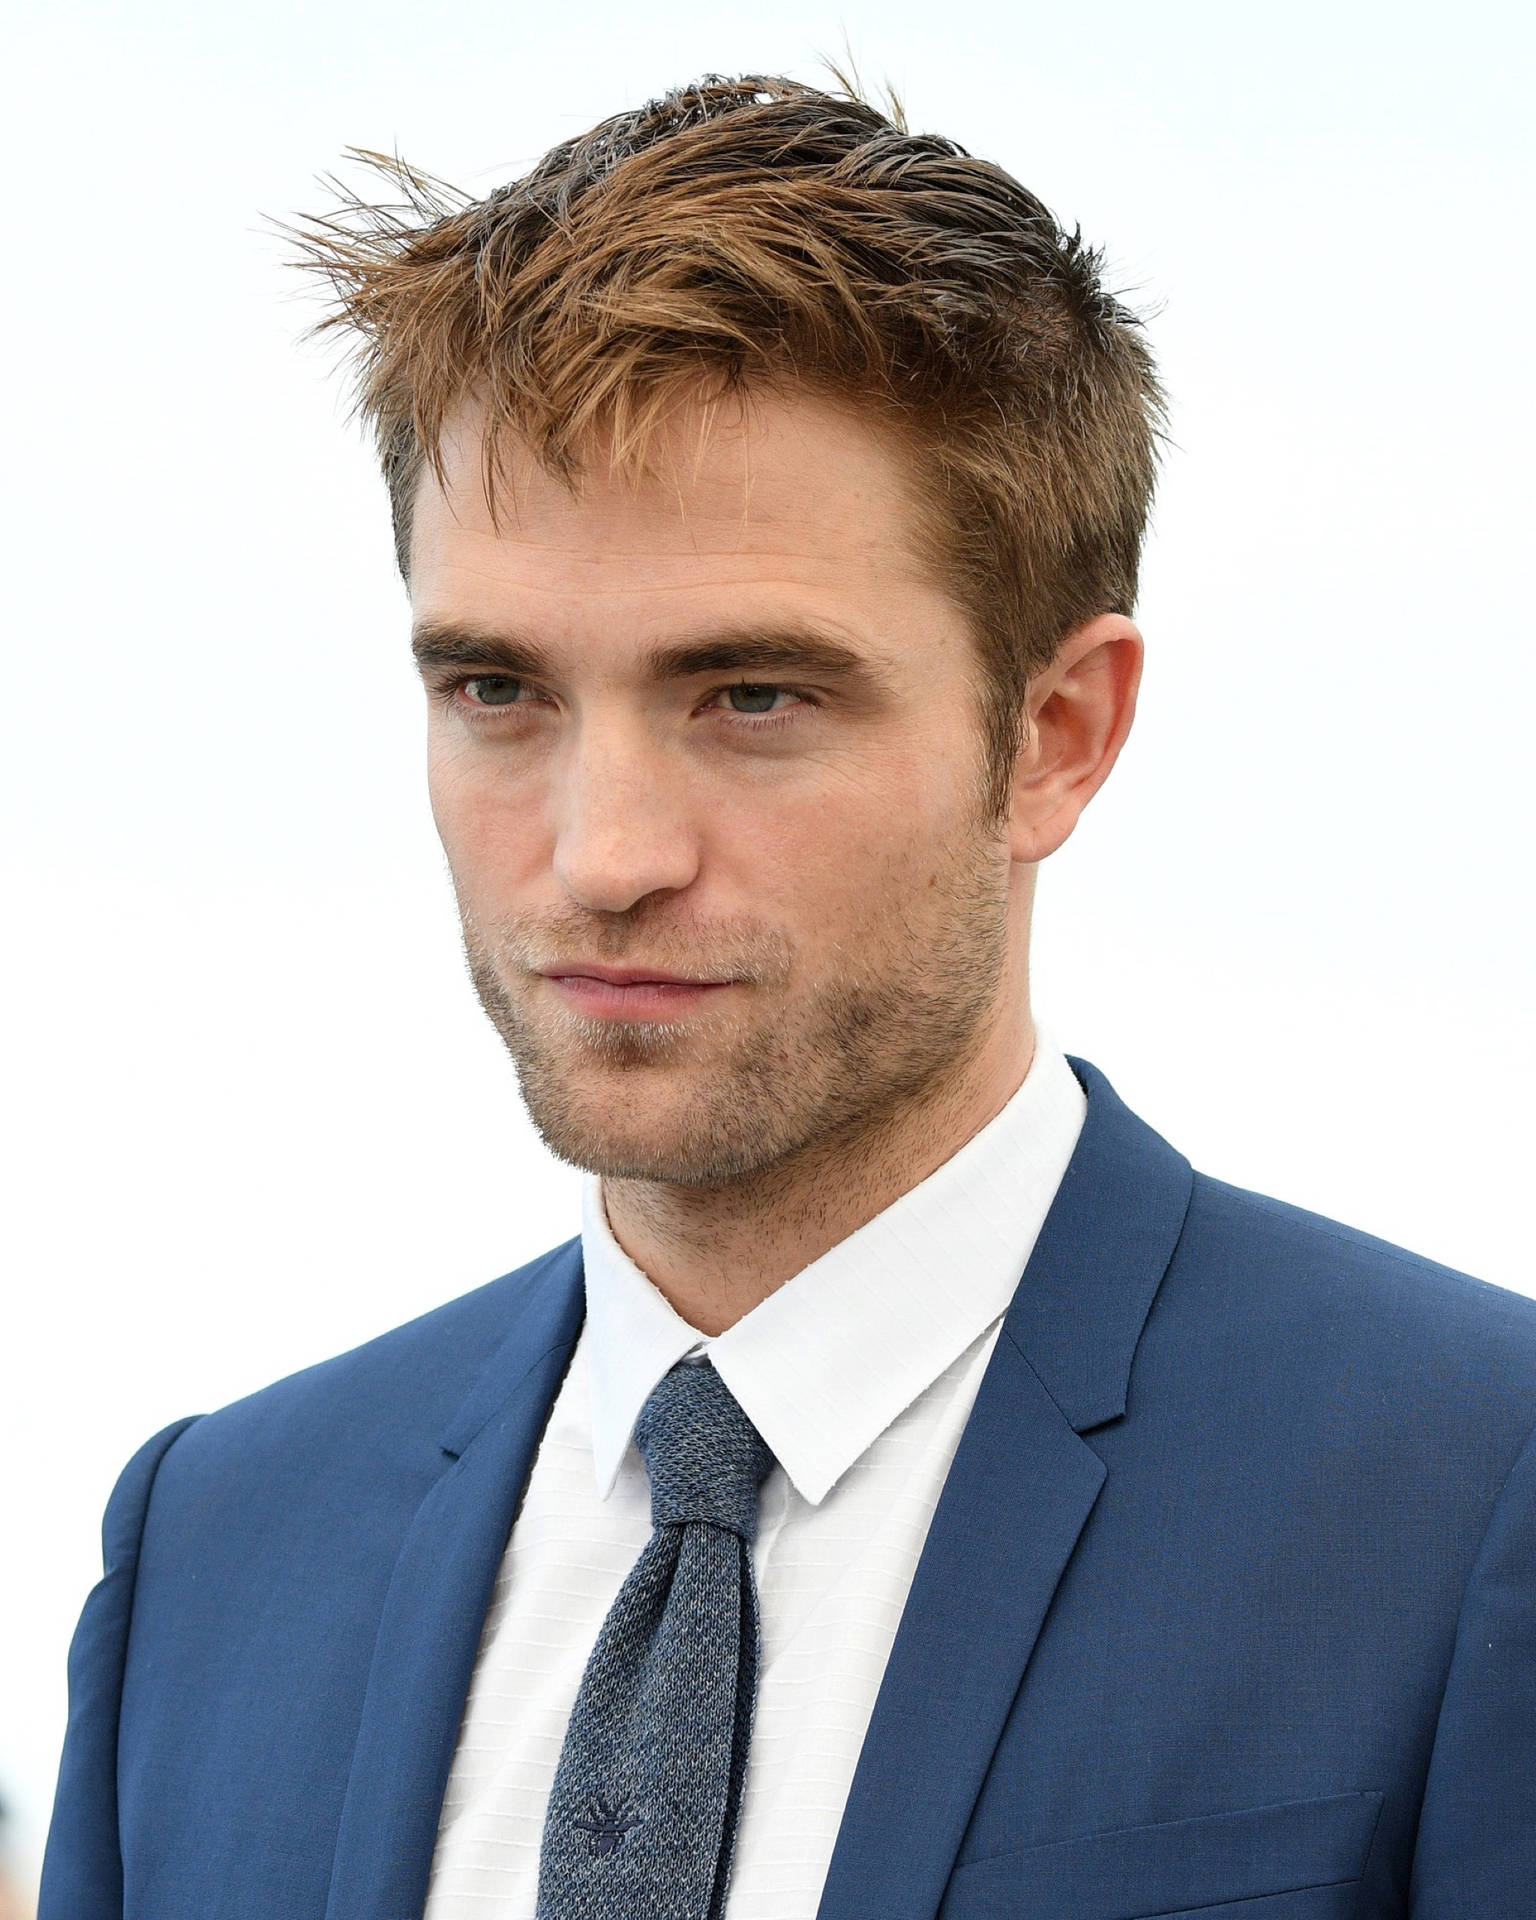 Robert Pattinson Best Actor Background